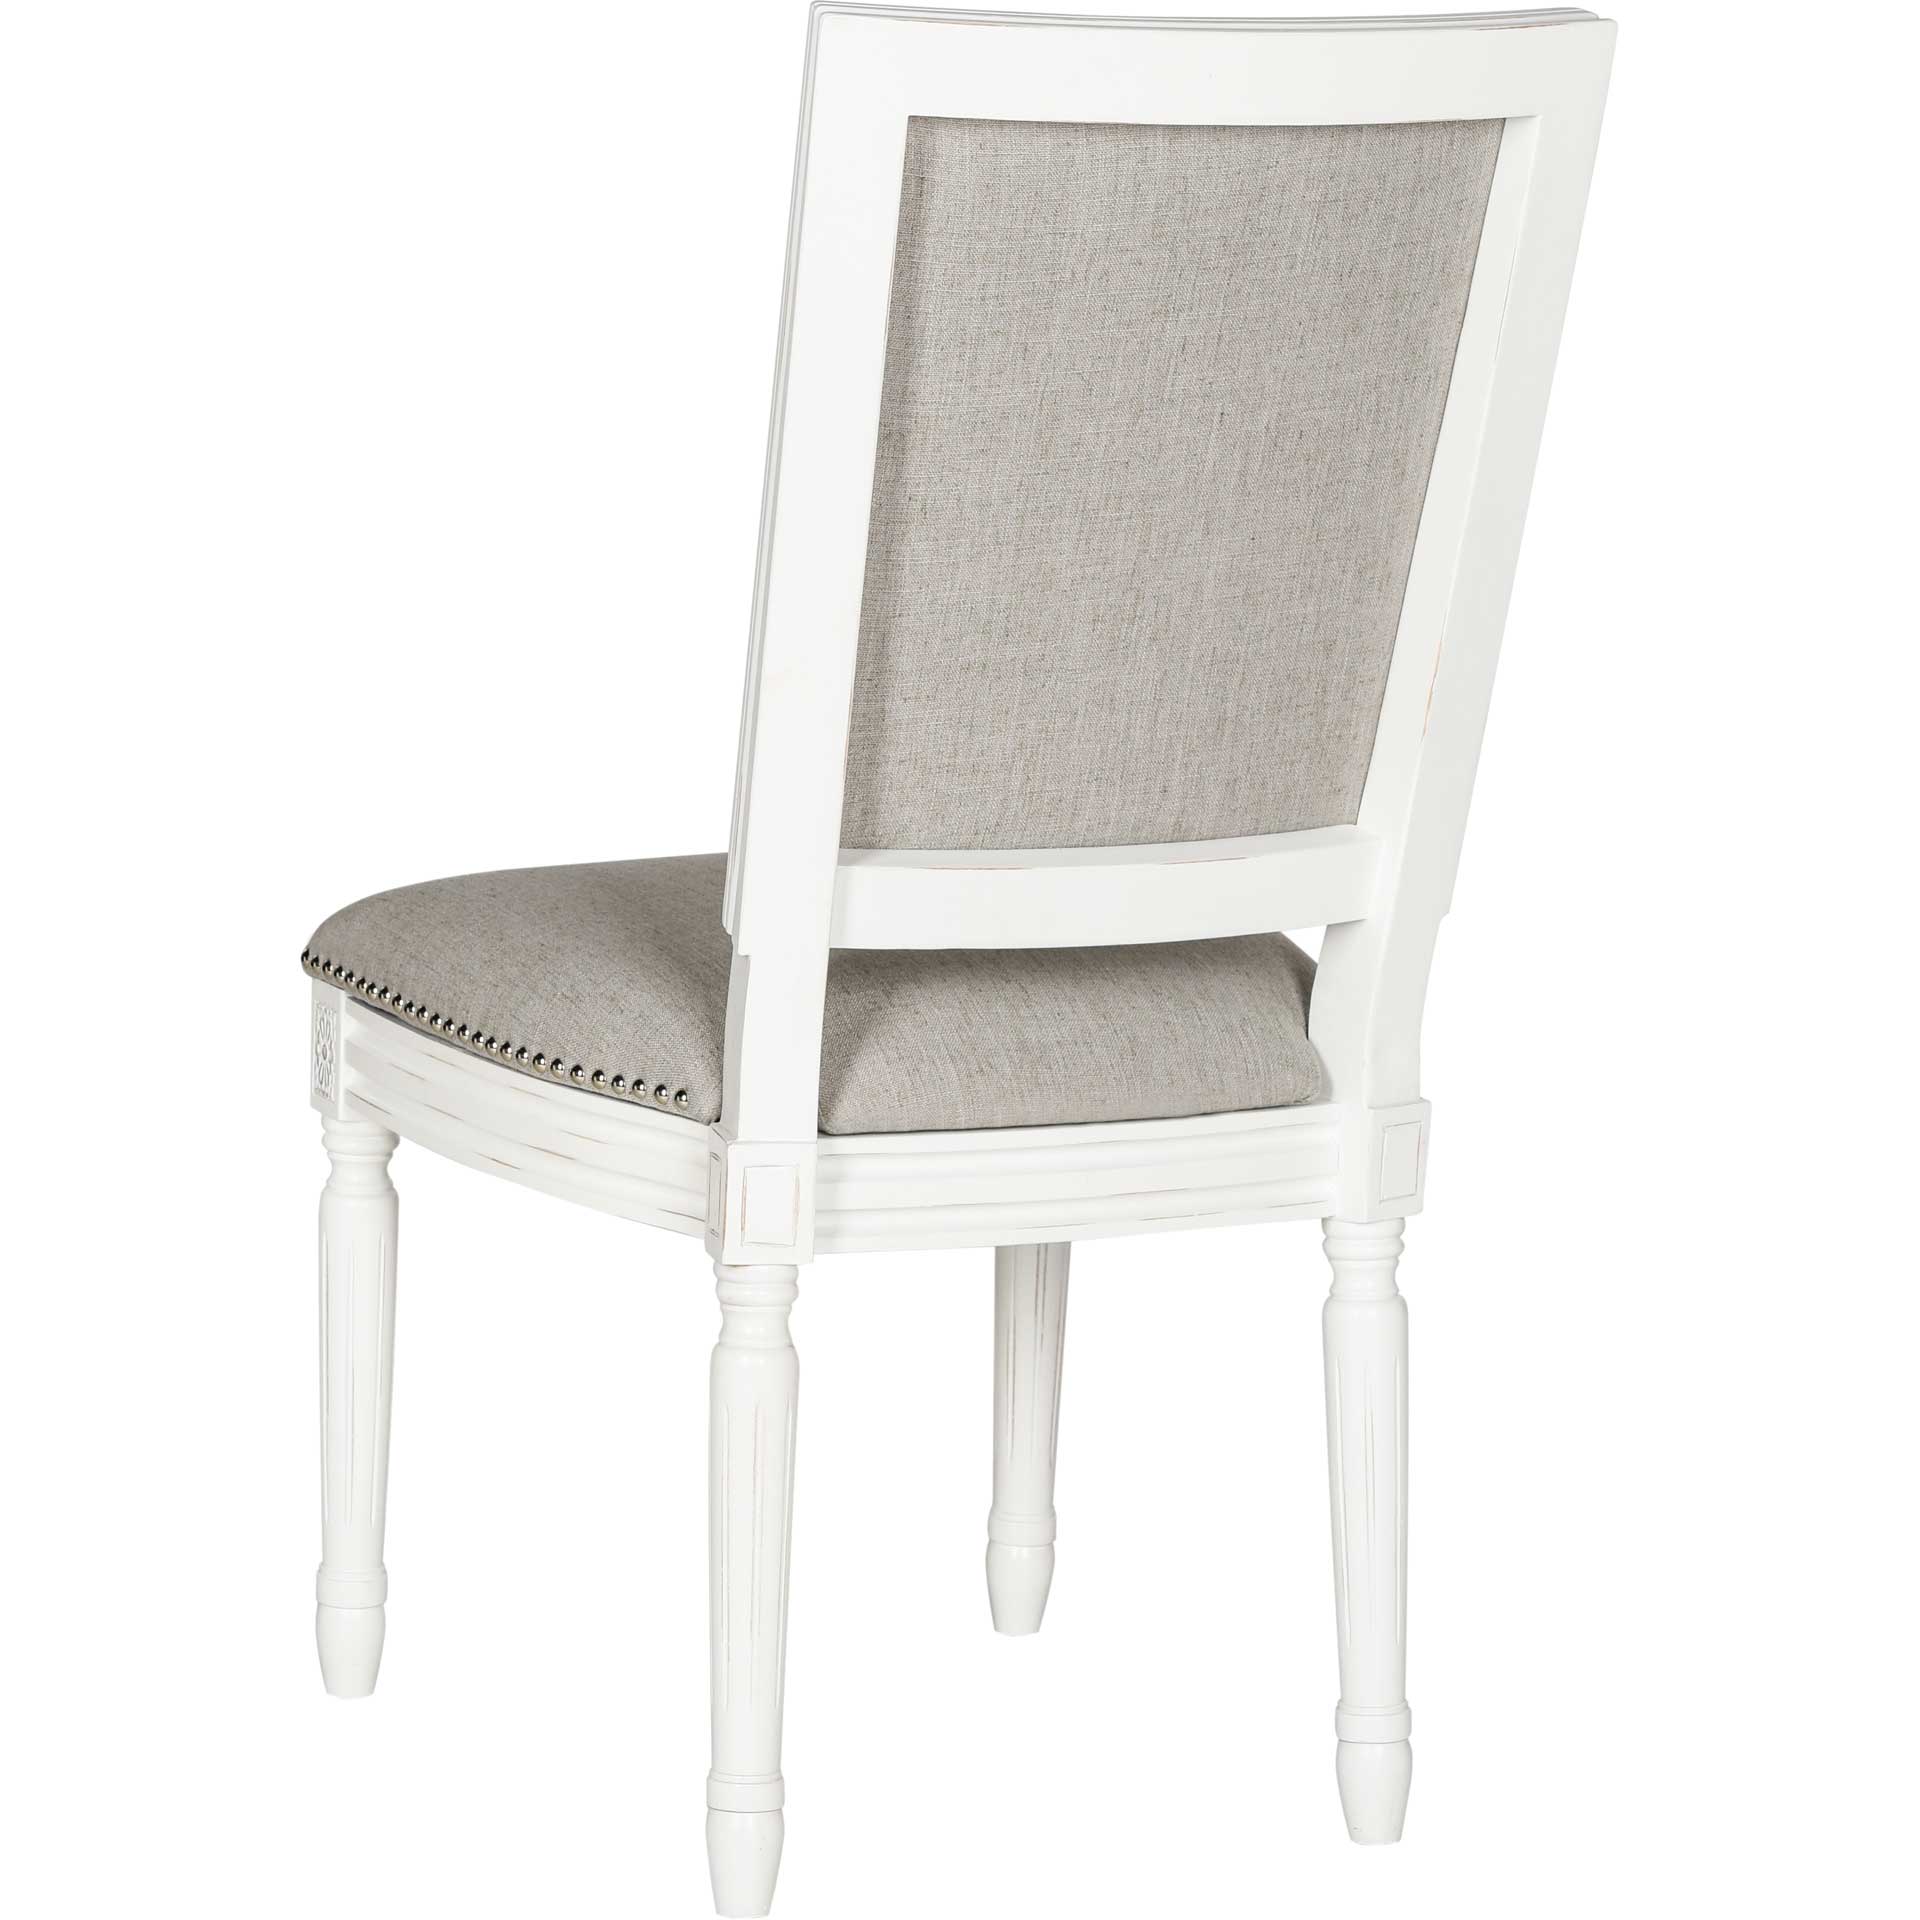 Burst Linen Side Chair Light Gray/Cream (Set of 2)